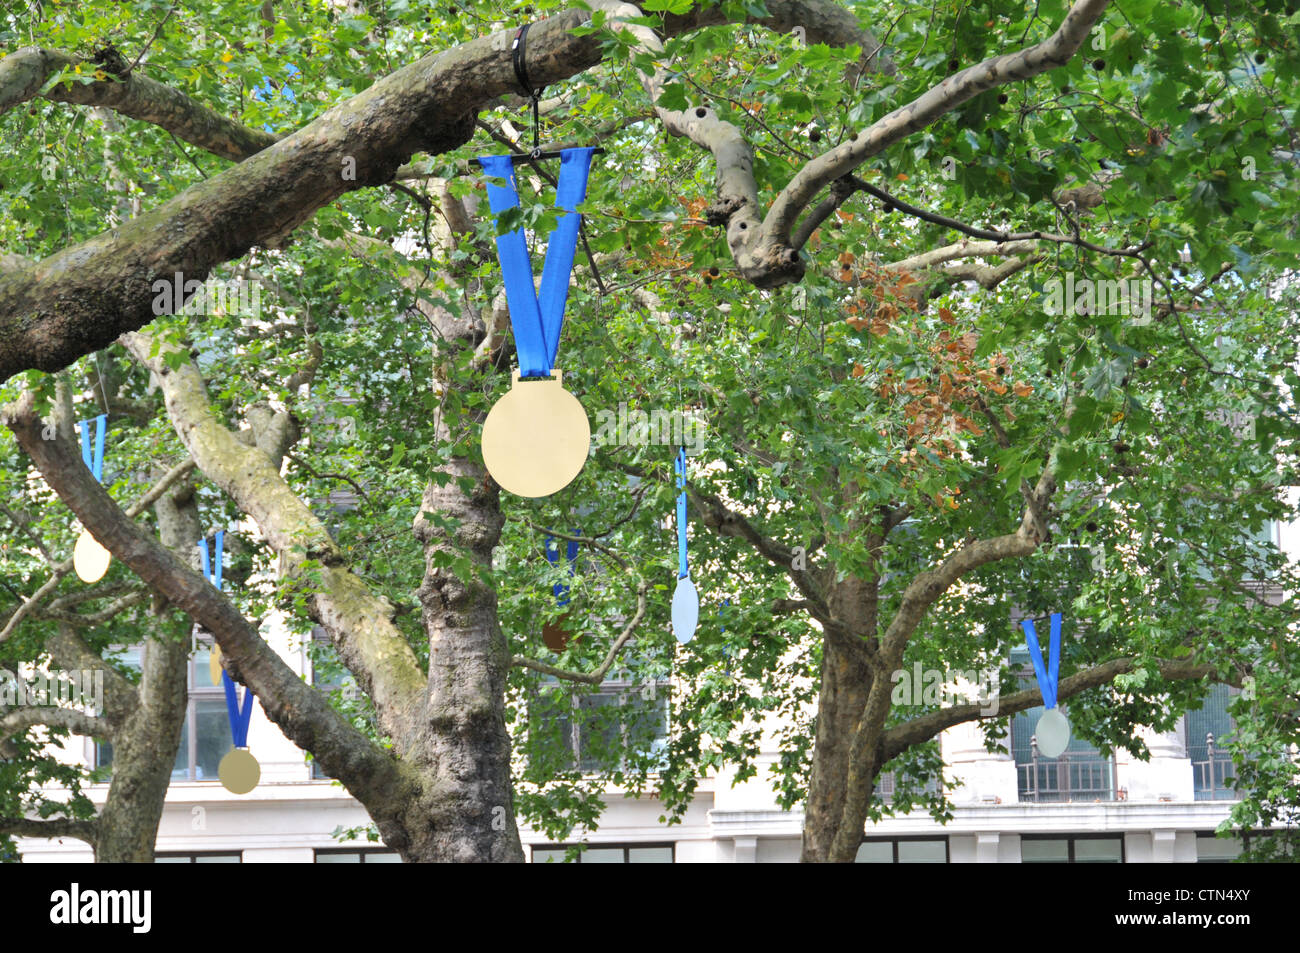 medallas-de-oro-en-las-olimpiadas-de-londres-2012-tema-arboles-leicester-square-ctn4xy.jpg